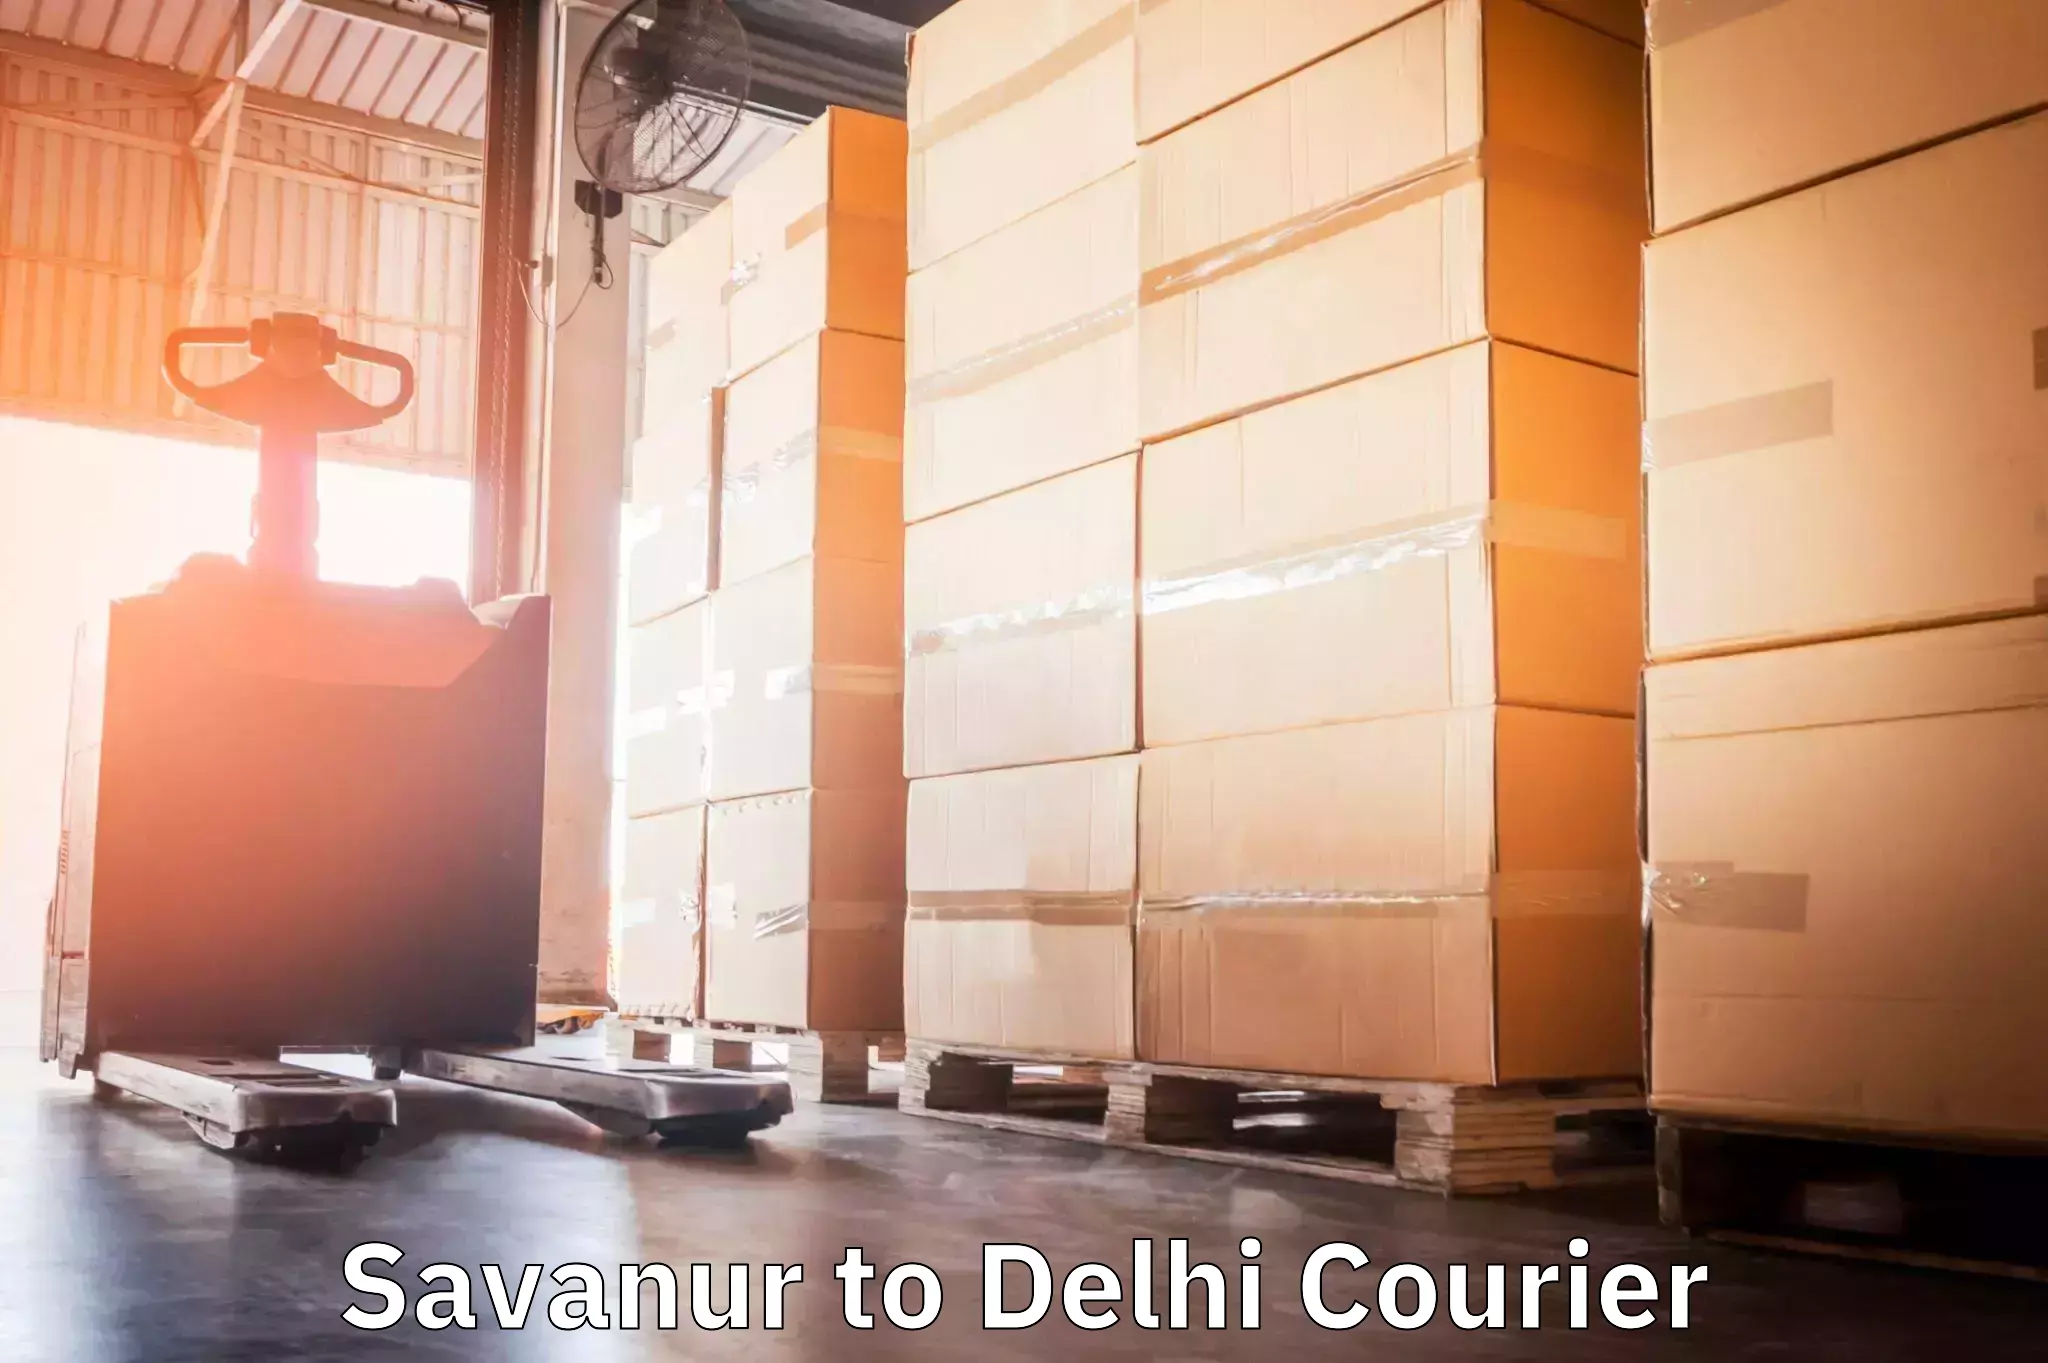 Weekend courier service Savanur to NIT Delhi